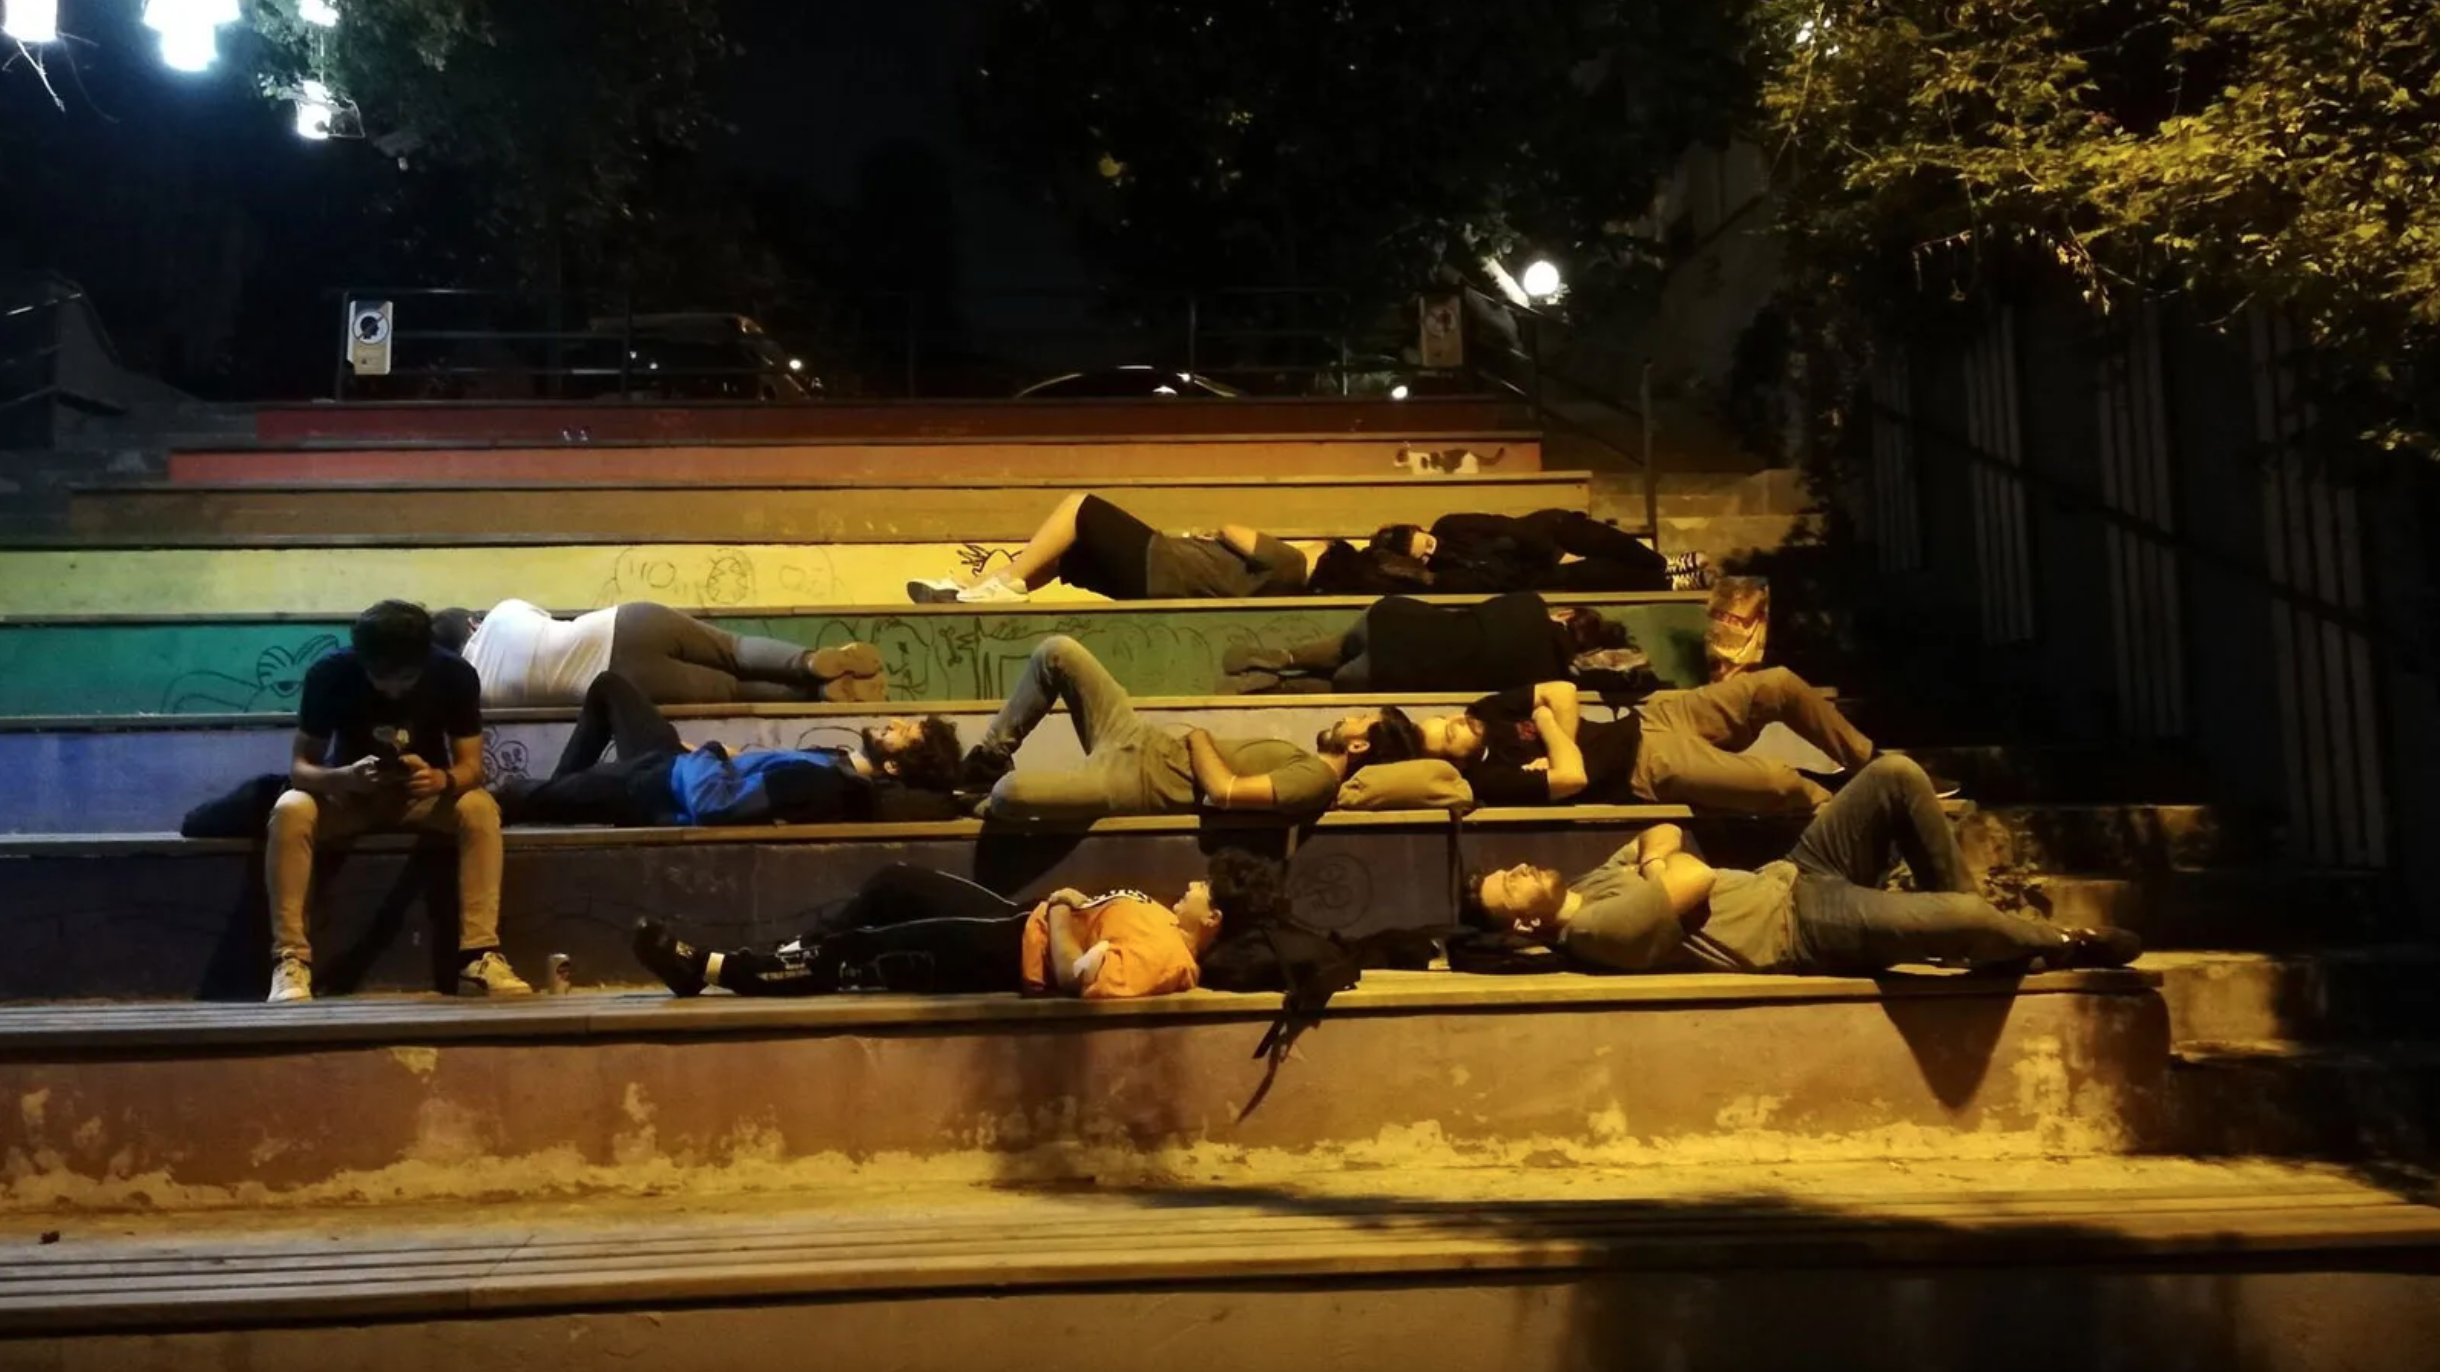 Yurt ve ev kiralarındaki pahalılık nedeniyle ‘Barınamıyoruz’ diyen üniversite öğrencilerinin eylemi, 19 Eylül'de İstanbul’daki Kadıköy Yoğurtçu Parkı’nda başladı ve birçok kente yayıldı. / Kaynak: Twitter)